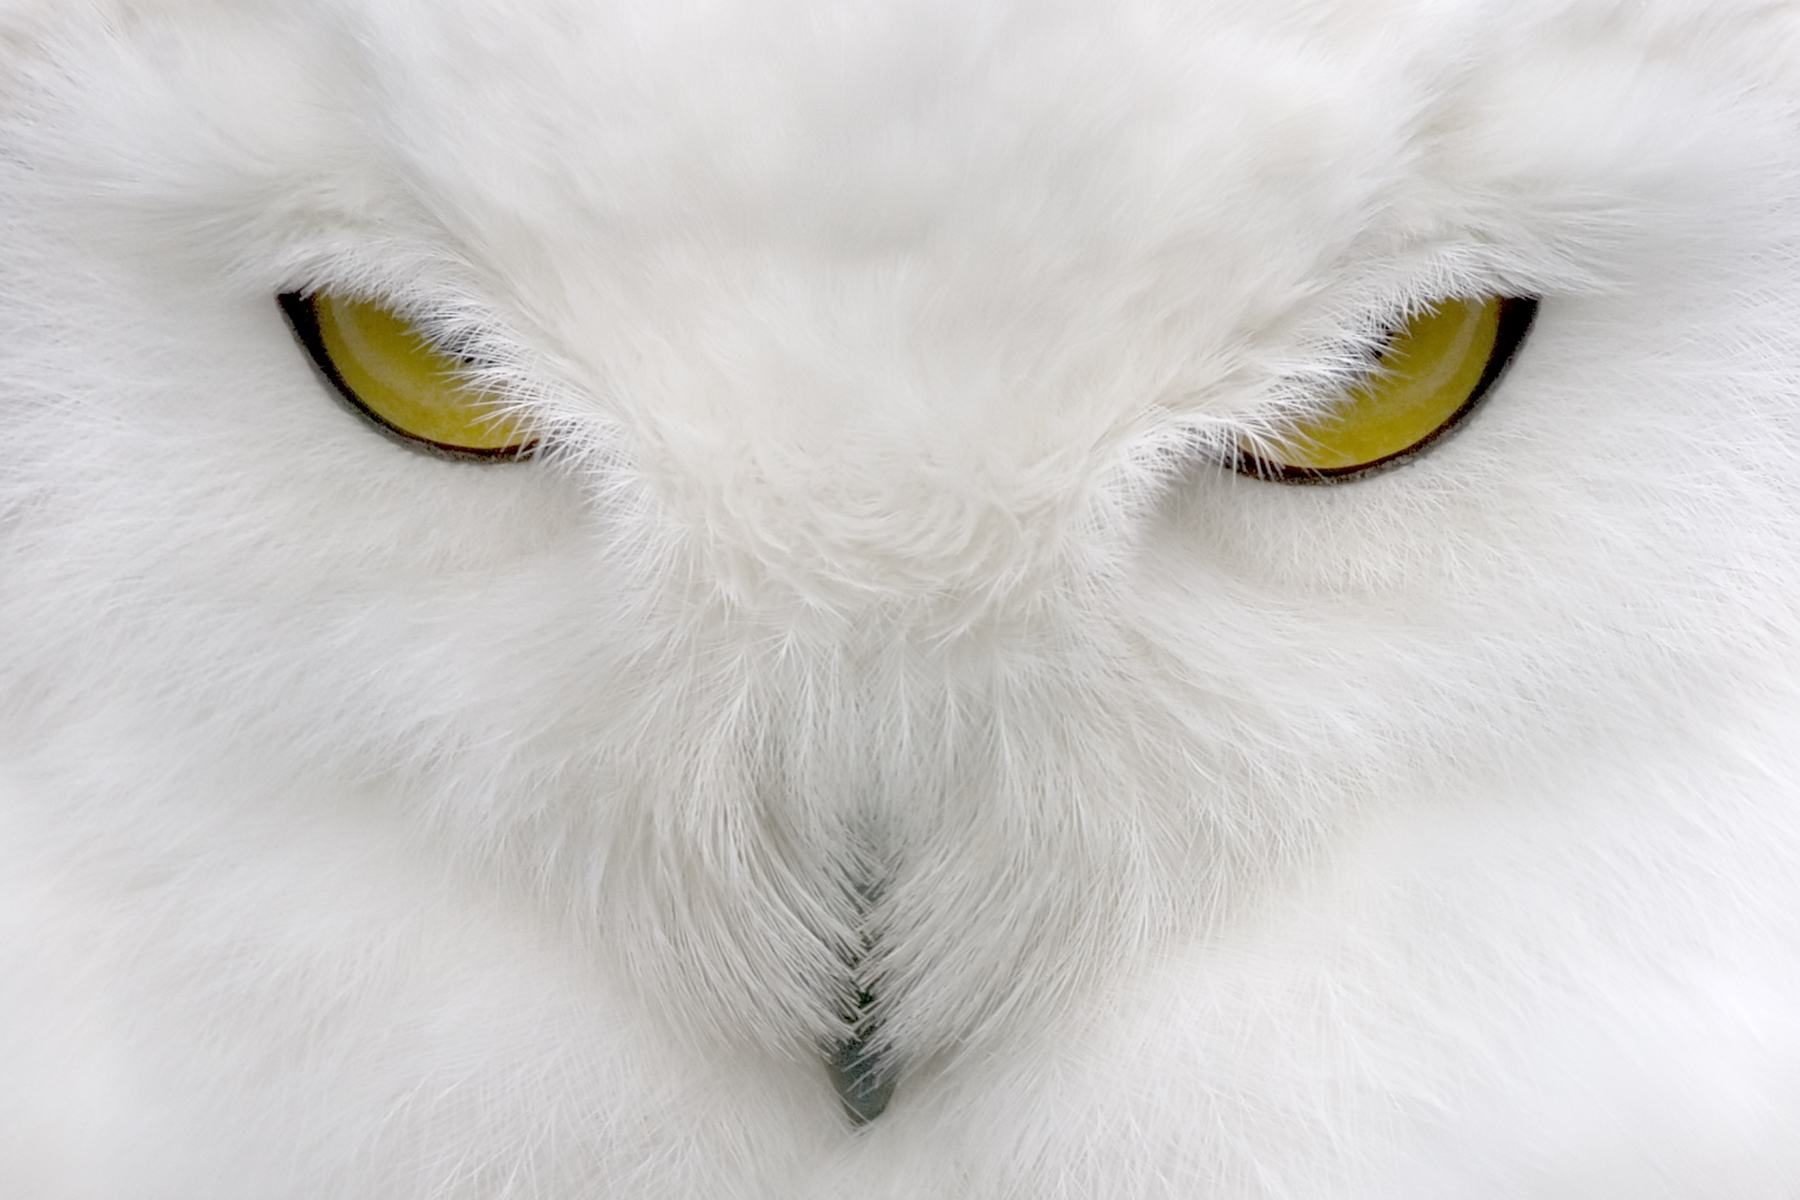 Beak and eyes of a polar owl